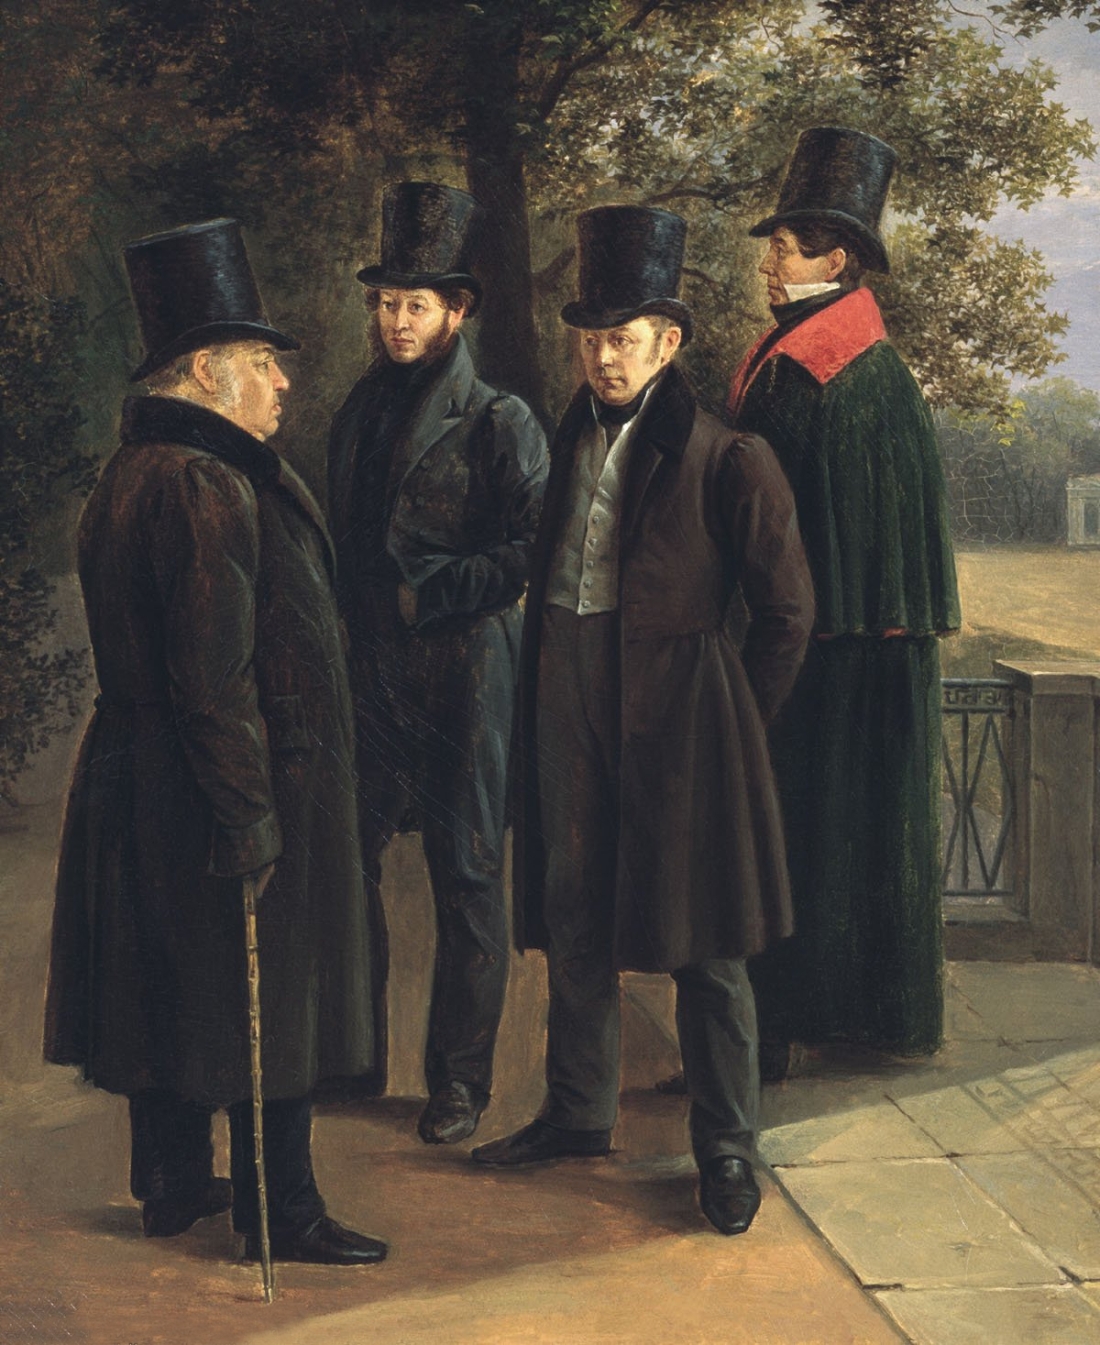 Τέσσερις λογοτέχνες σε έναν πίνακα του Γκριγκόρι Τσερνέσοφ (1832). Από αριστερά: ο Ιβάν Κριλόφ, ίσως πιο επιγραμματικός ρώσος συγγραφέας, δραματουργός και δημοσιογράφος (1769-1844), ο Αλεξάντερ Πούσκιν (1799-1837), ο ποιητής Βασίλι Ζουκόφσκι (1787-1852) και ο ουκρανός ποιητής και μεταφραστής Νικολάι Γκνέντιχ (1784-1833). 